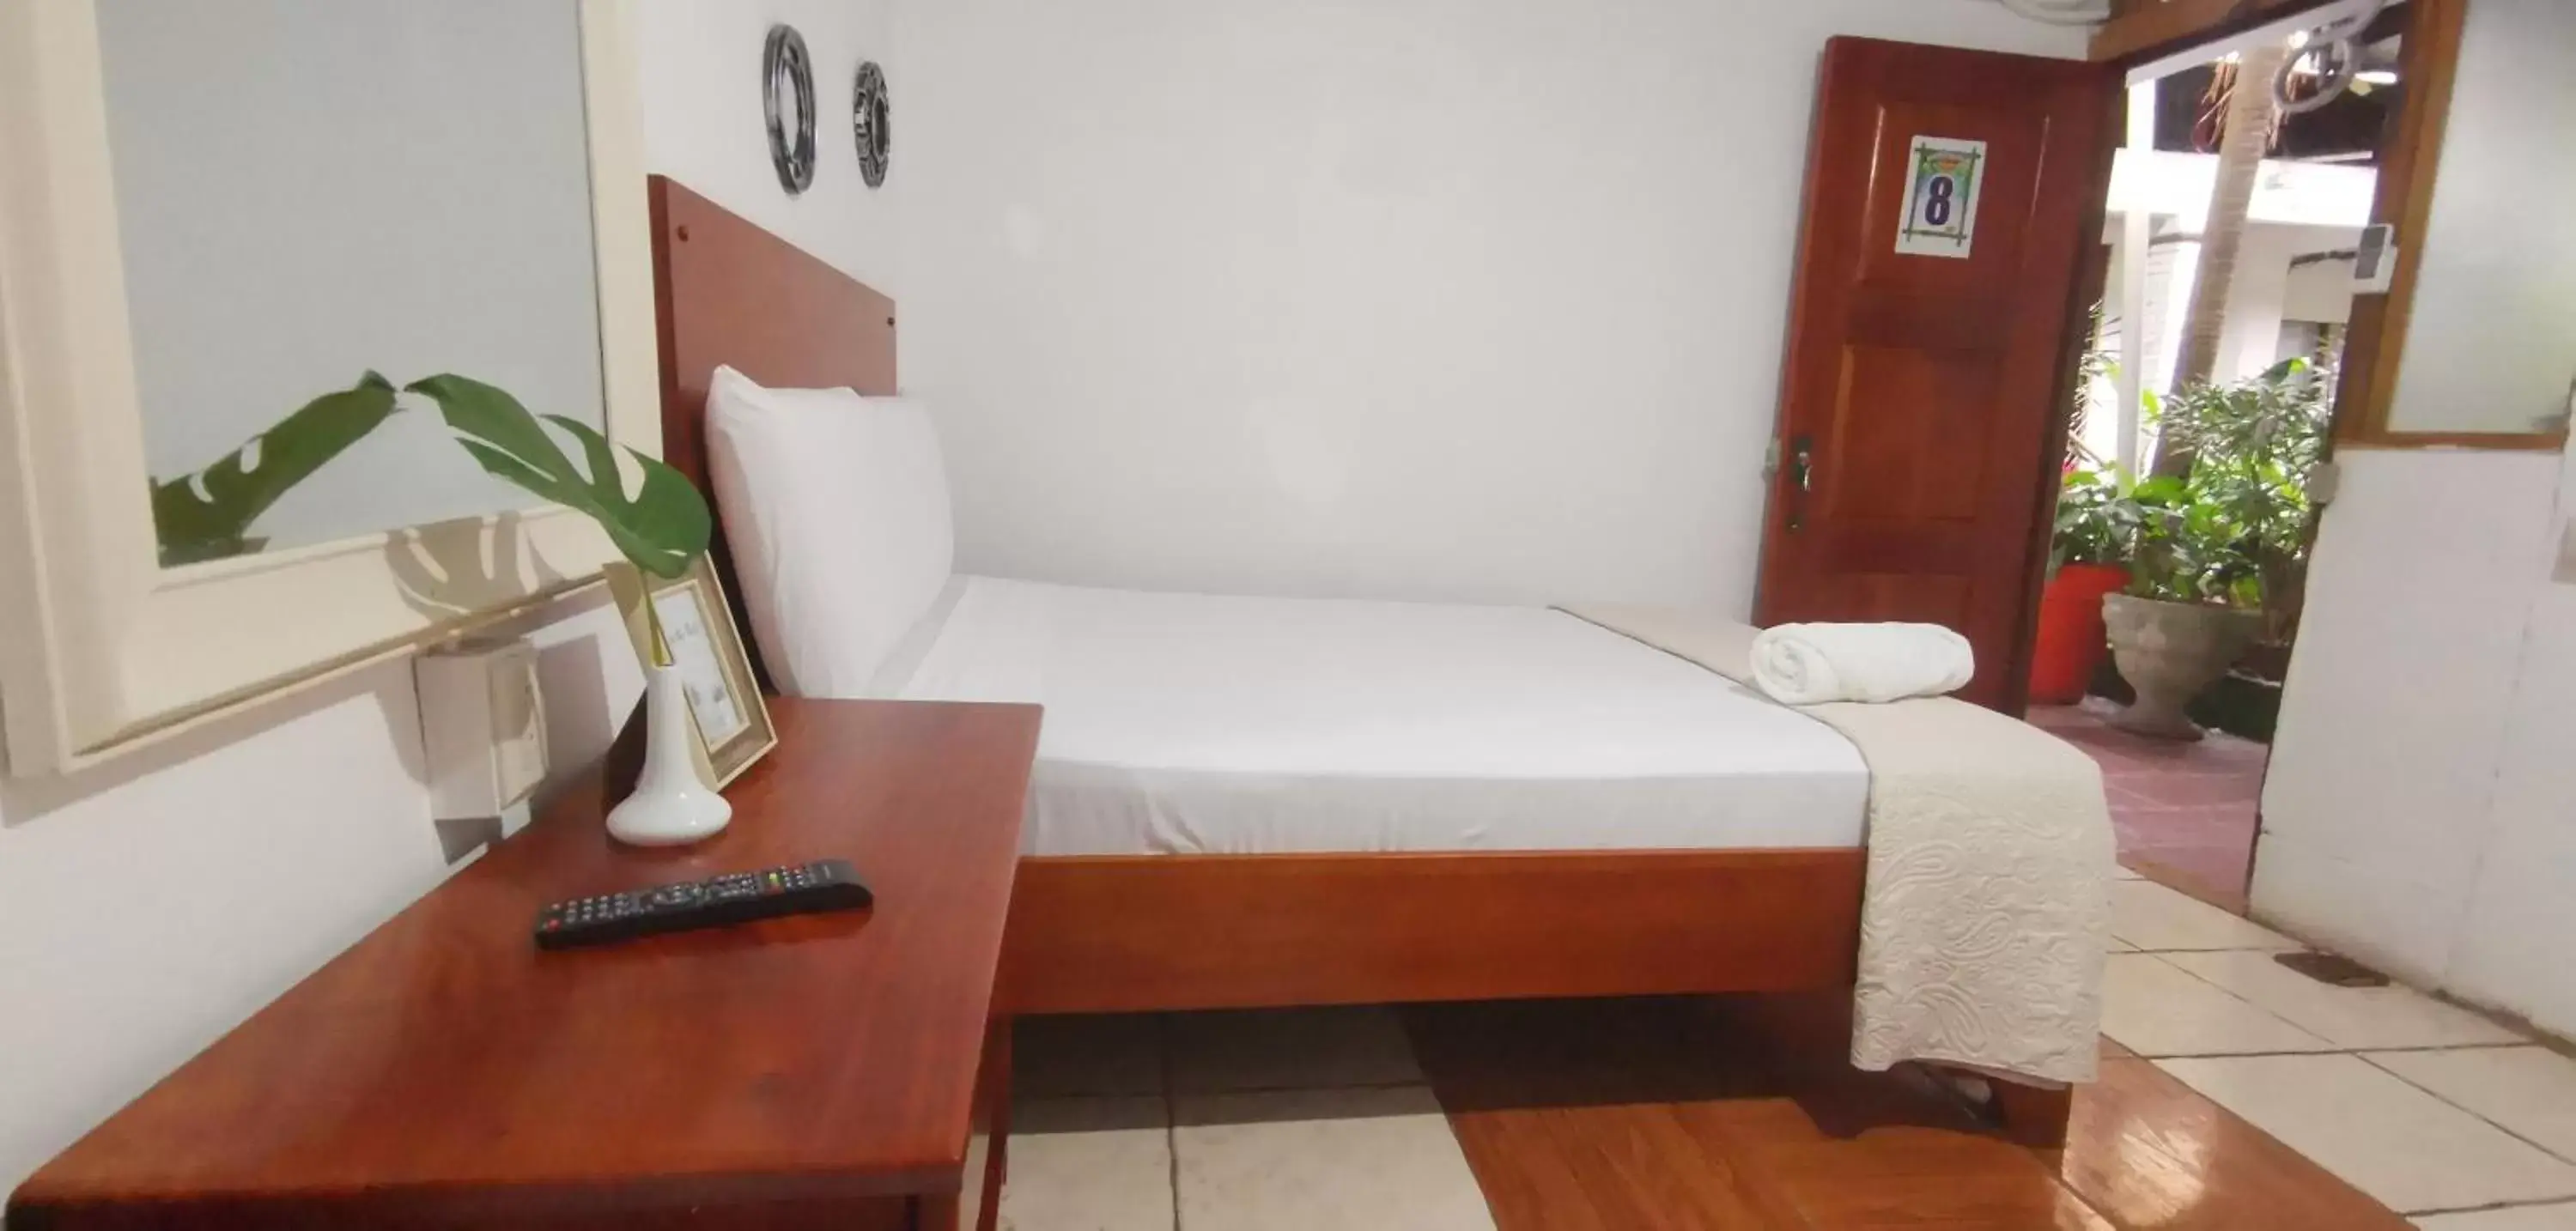 Bed in Hotel Aldea Pura Vida